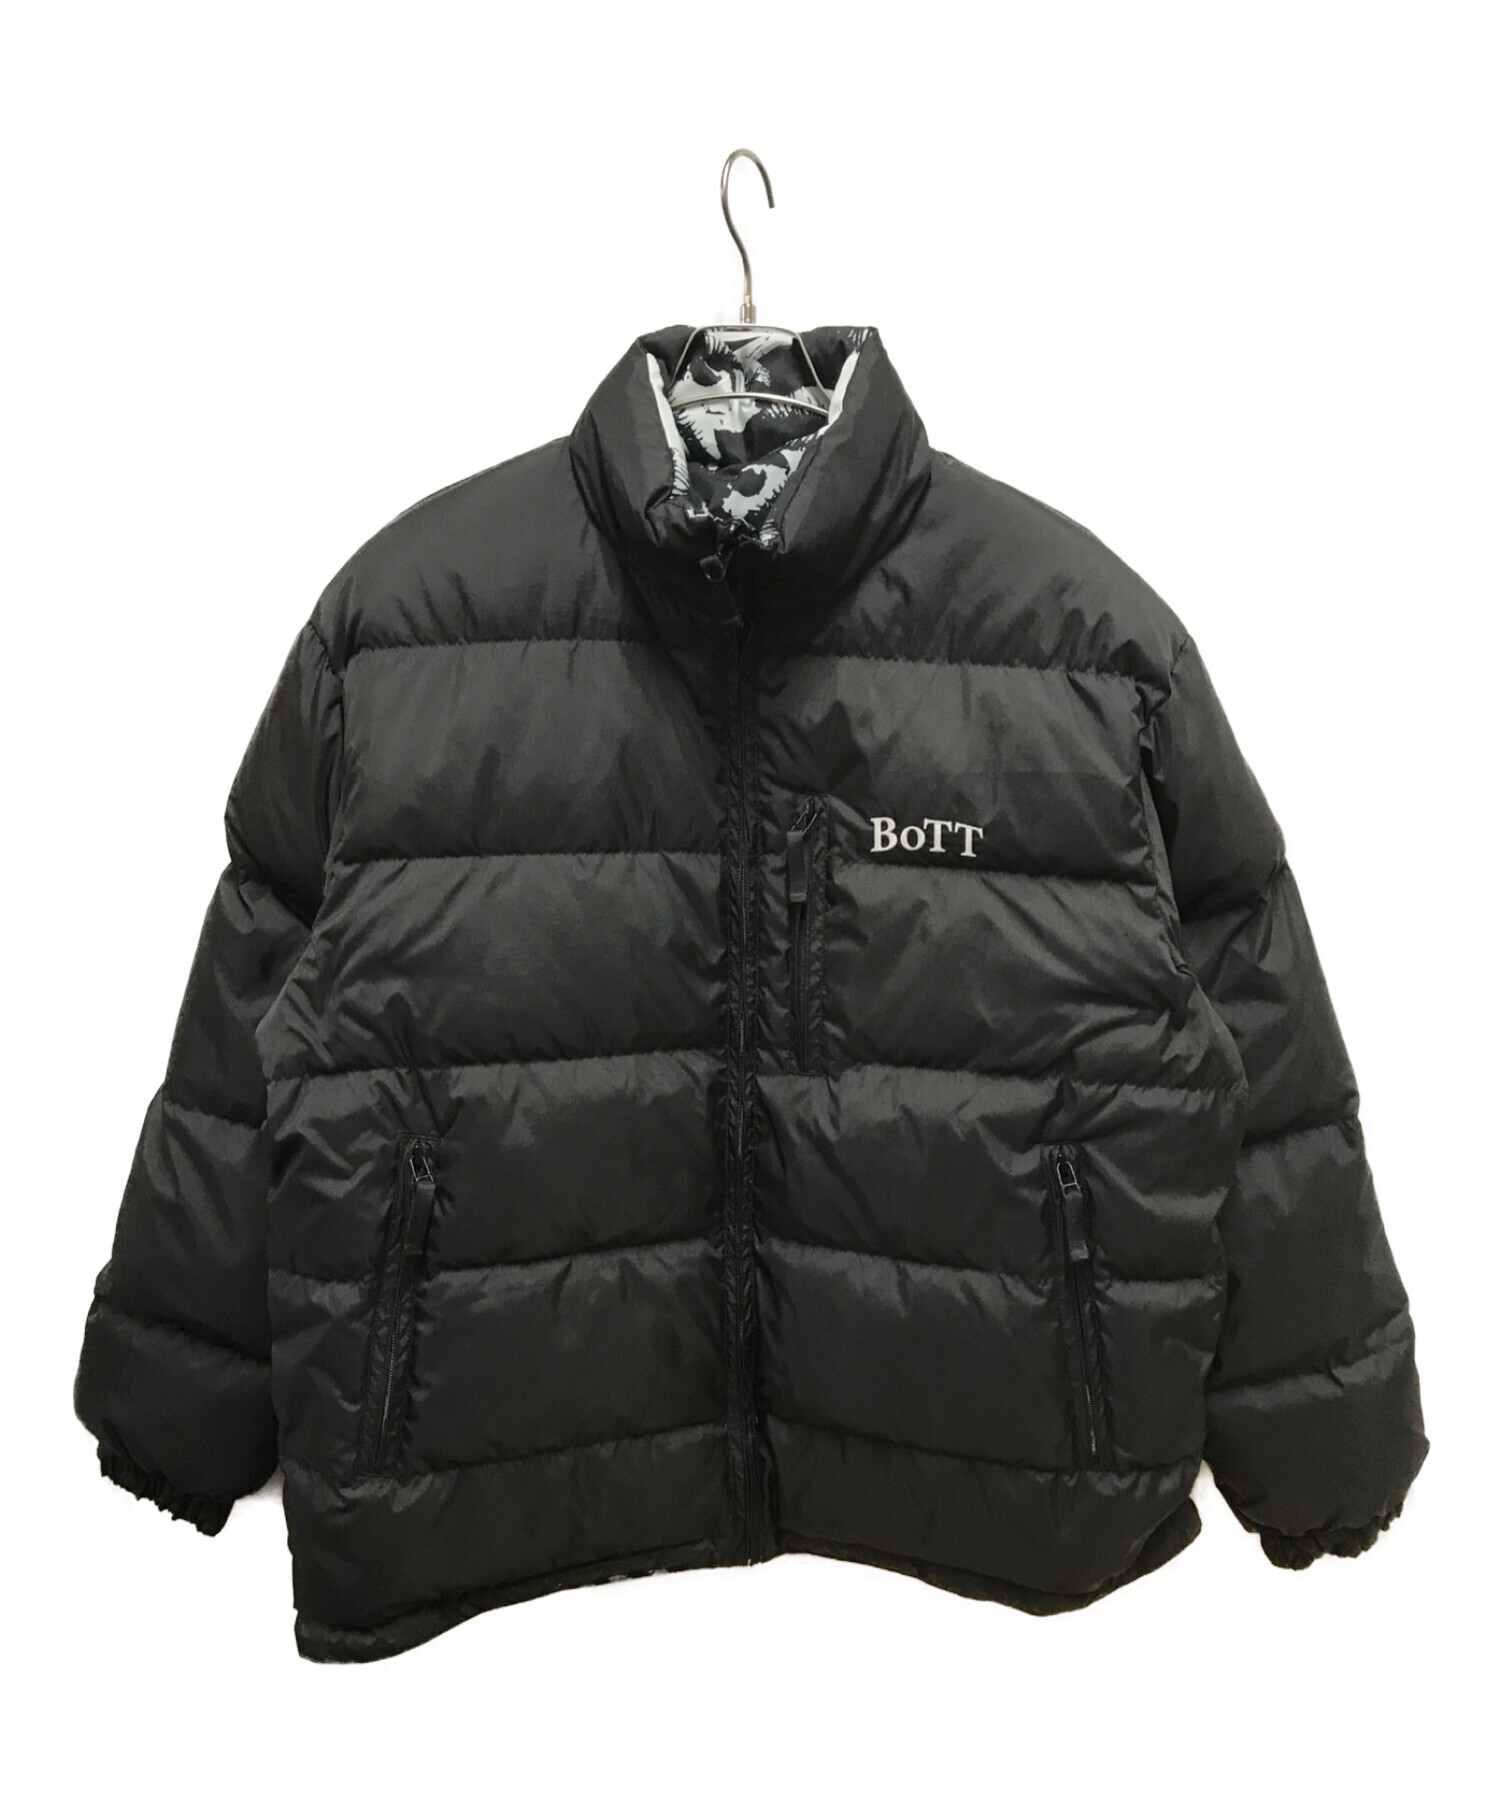 BoTT (ボット) リバーシブルダウンジャケット / Reversible Down Jacket ブラック サイズ:M